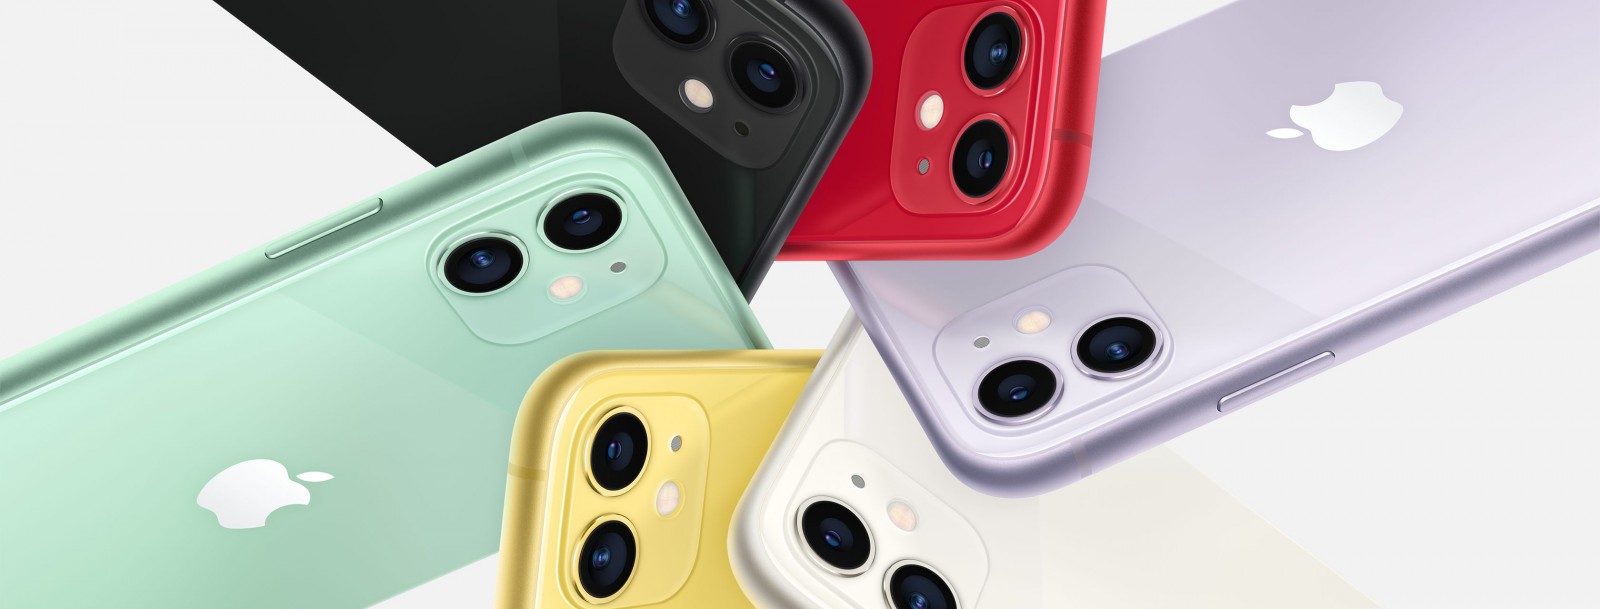 Все цвета и объем памяти Apple iPhone 11